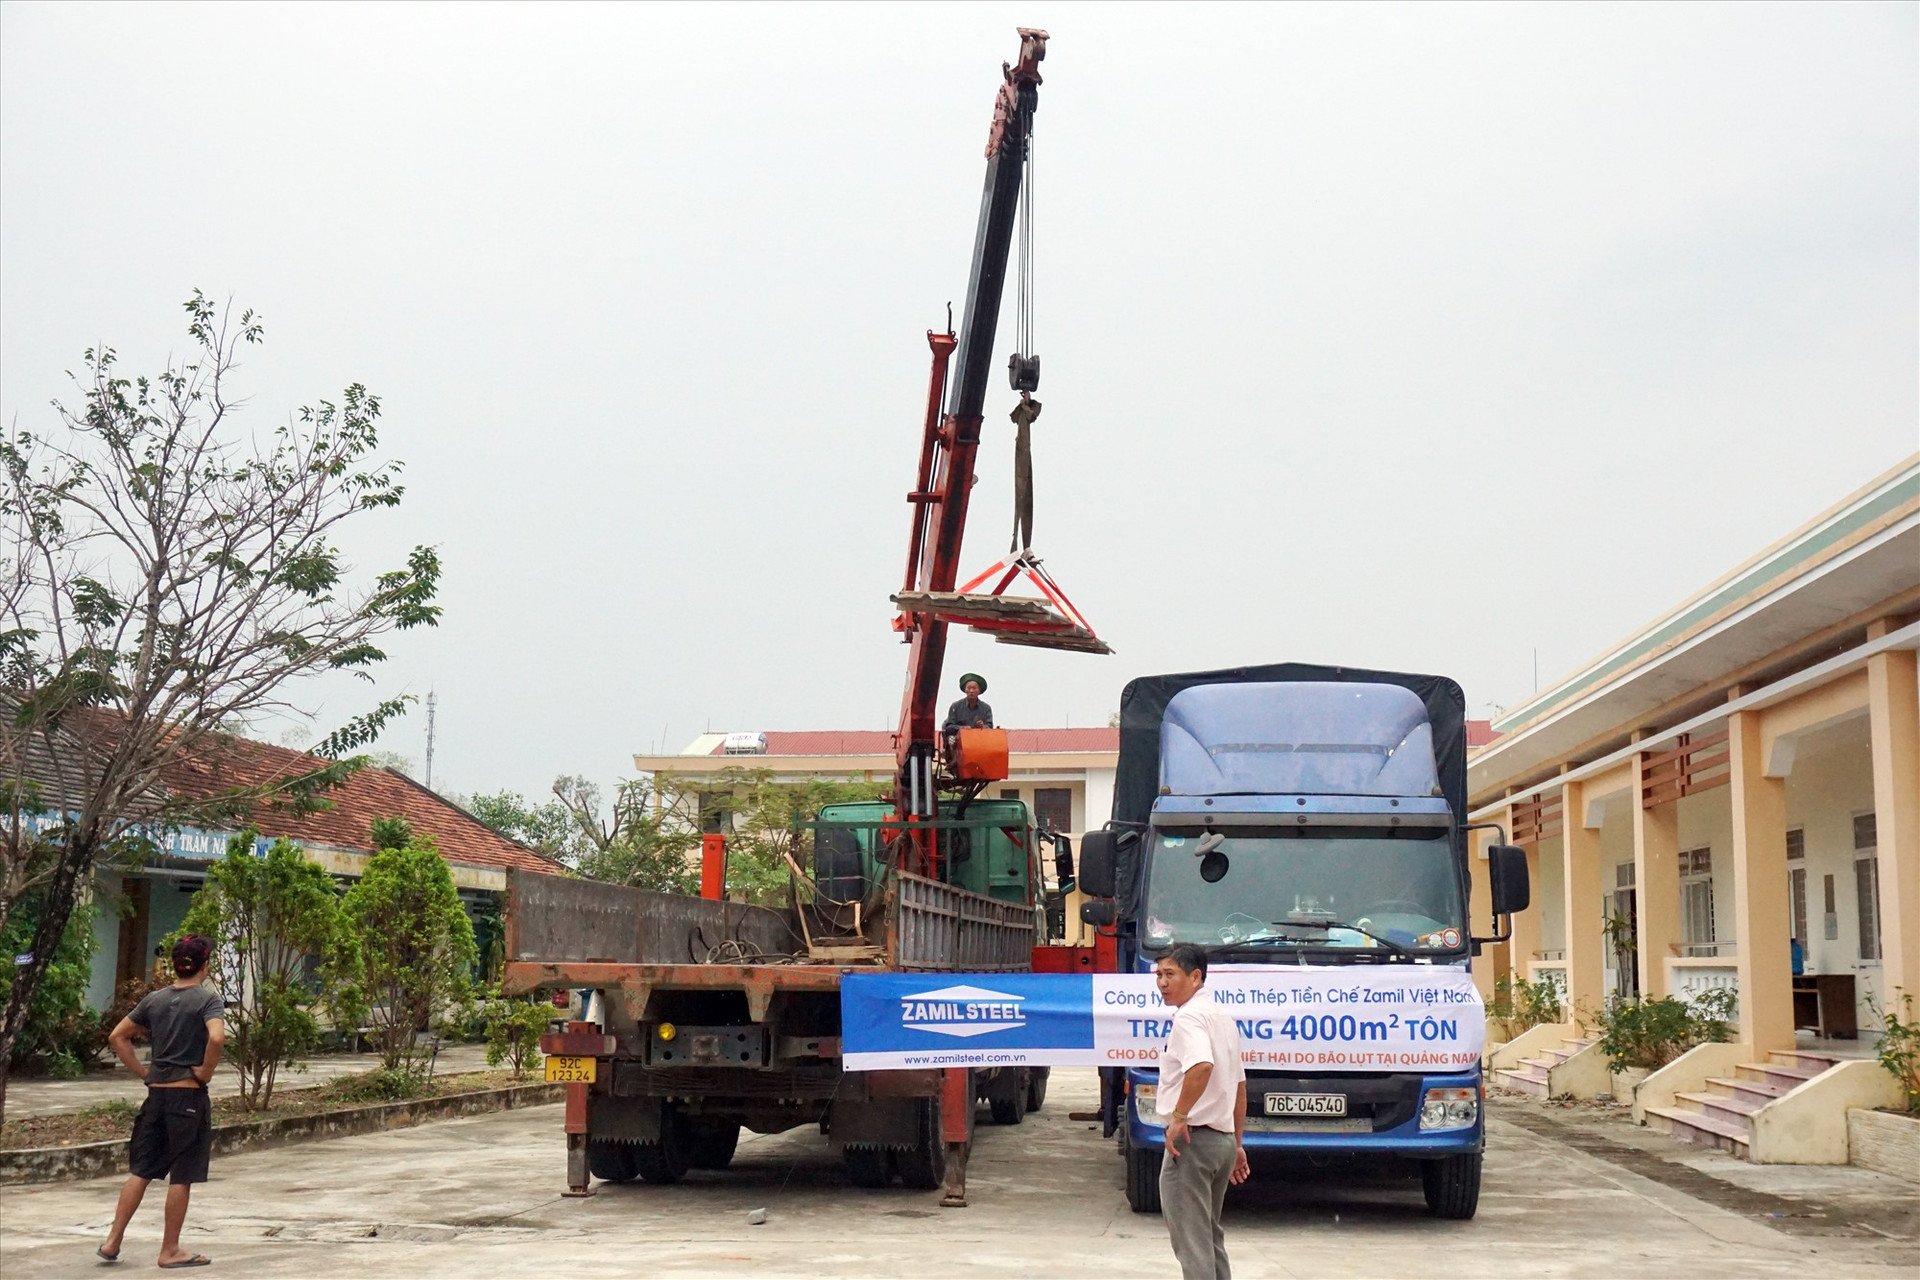 Toàn bộ số tôn mà phía Công ty TNHH Nhà Thép Tiền chế Zamil Việt Nam sẽ được chuyển về cho các trường bị thiệt hại do bão để tiến hành lợp ngay.